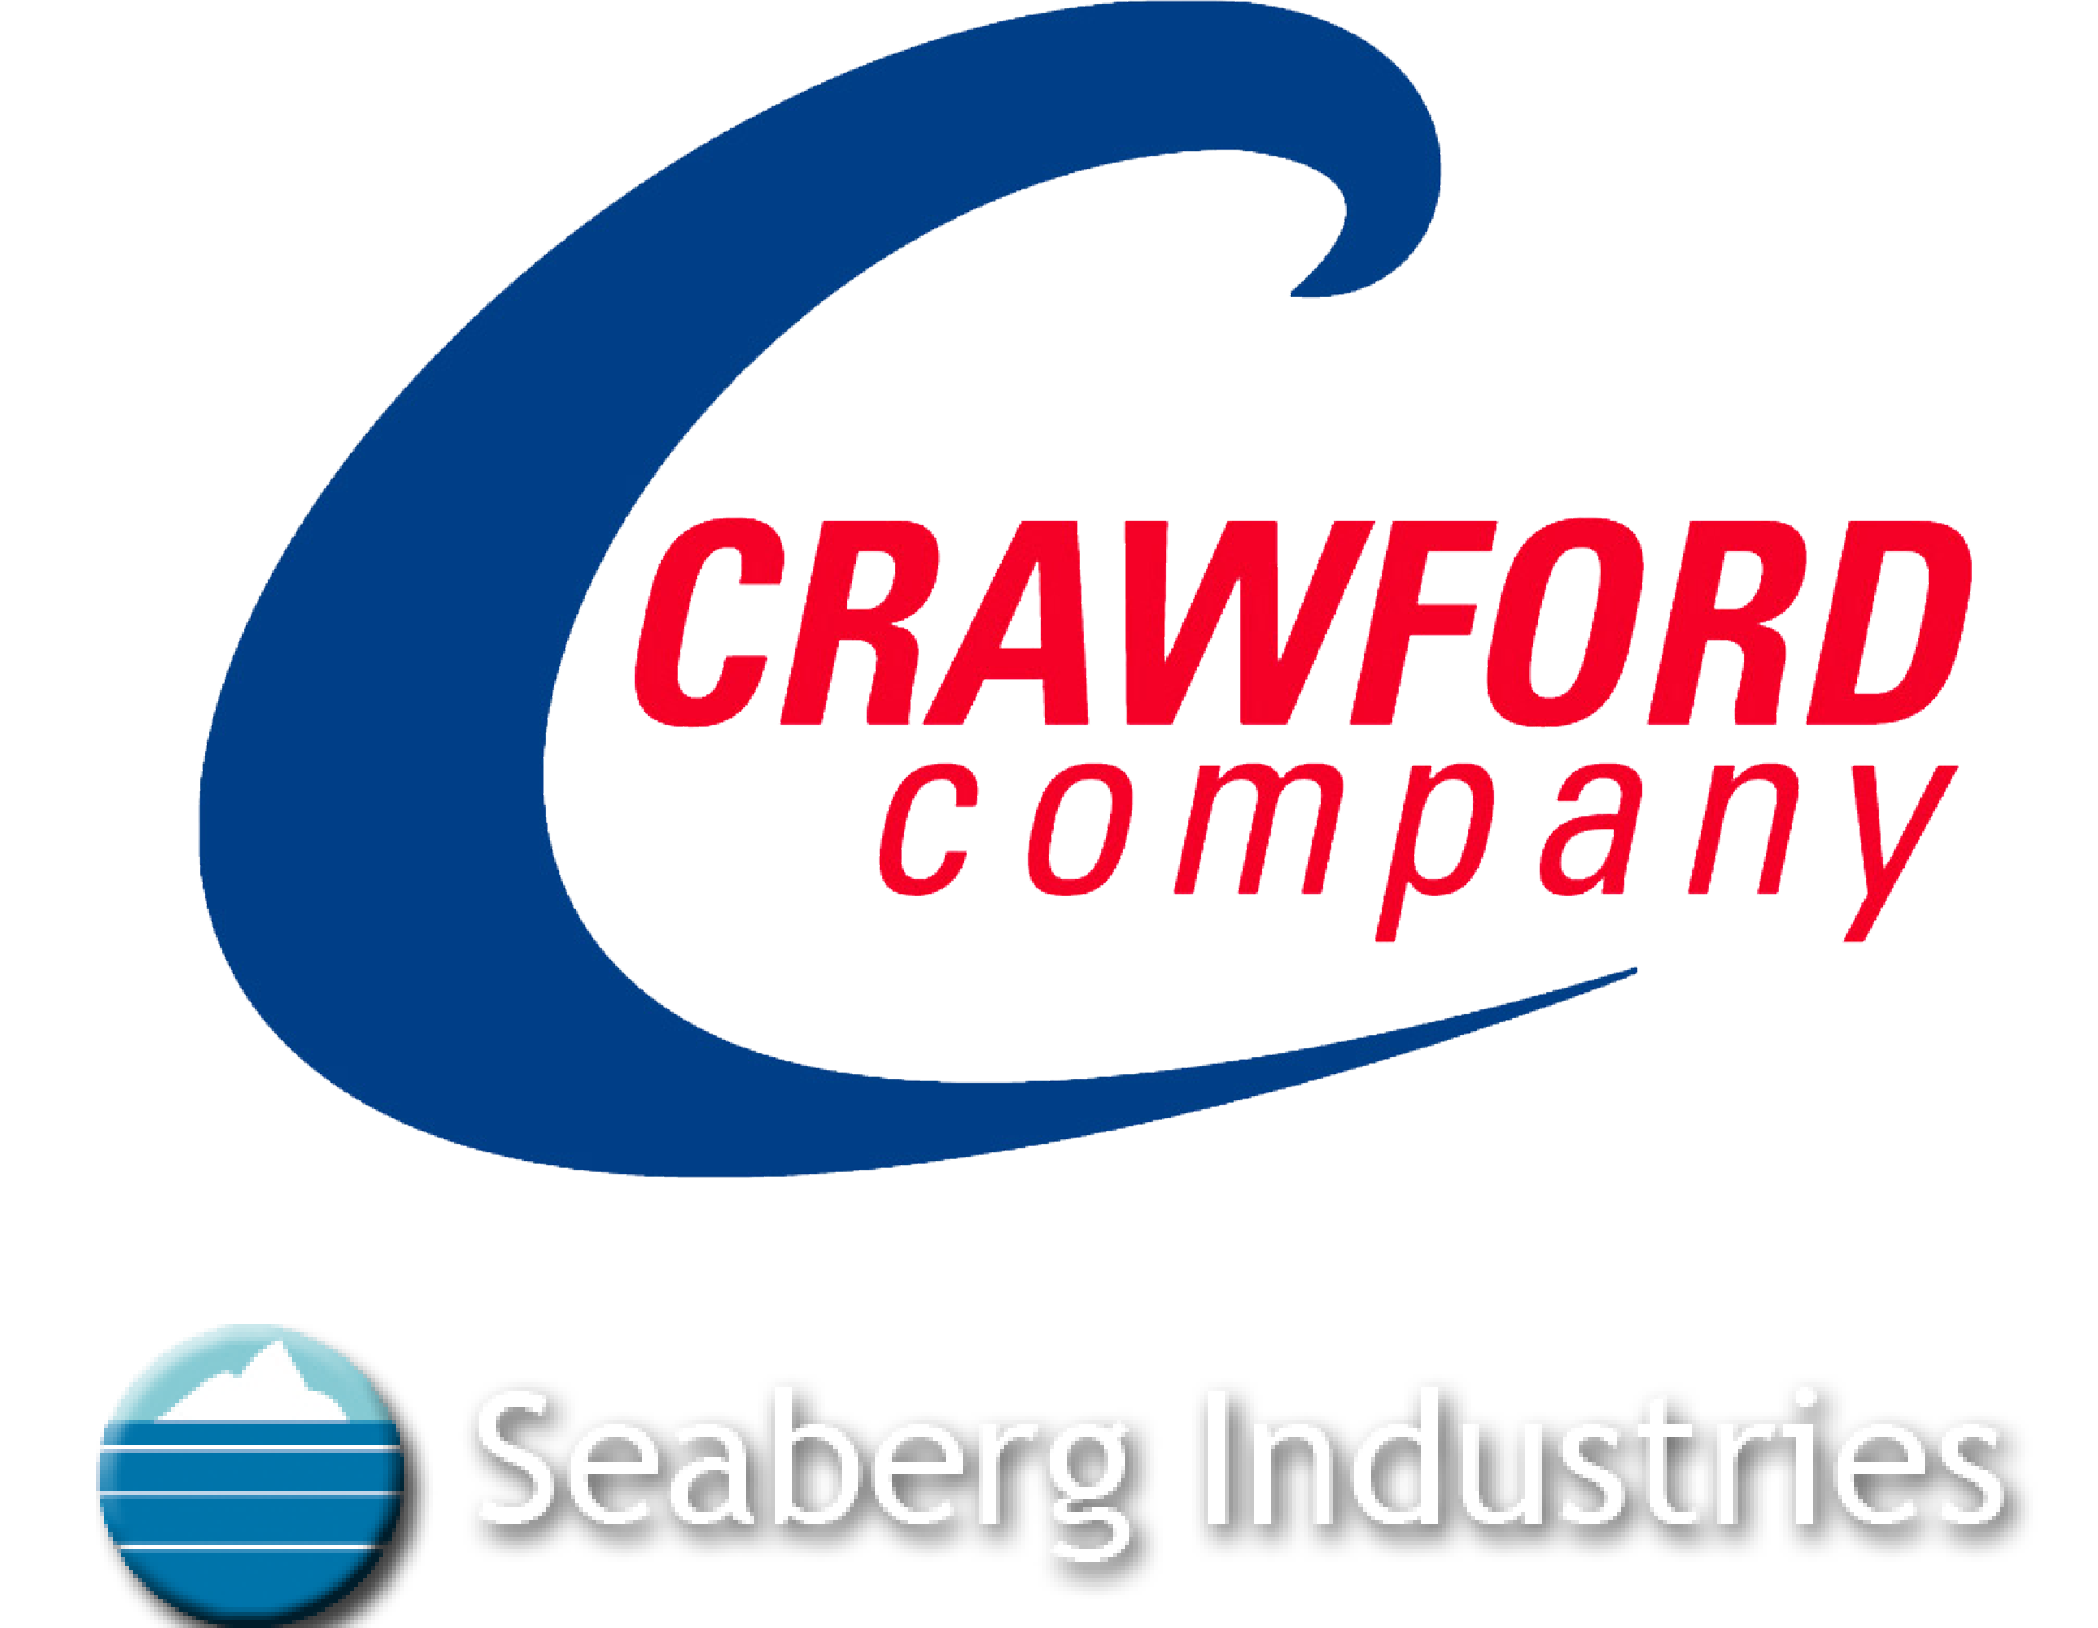 Crawford seaberg white